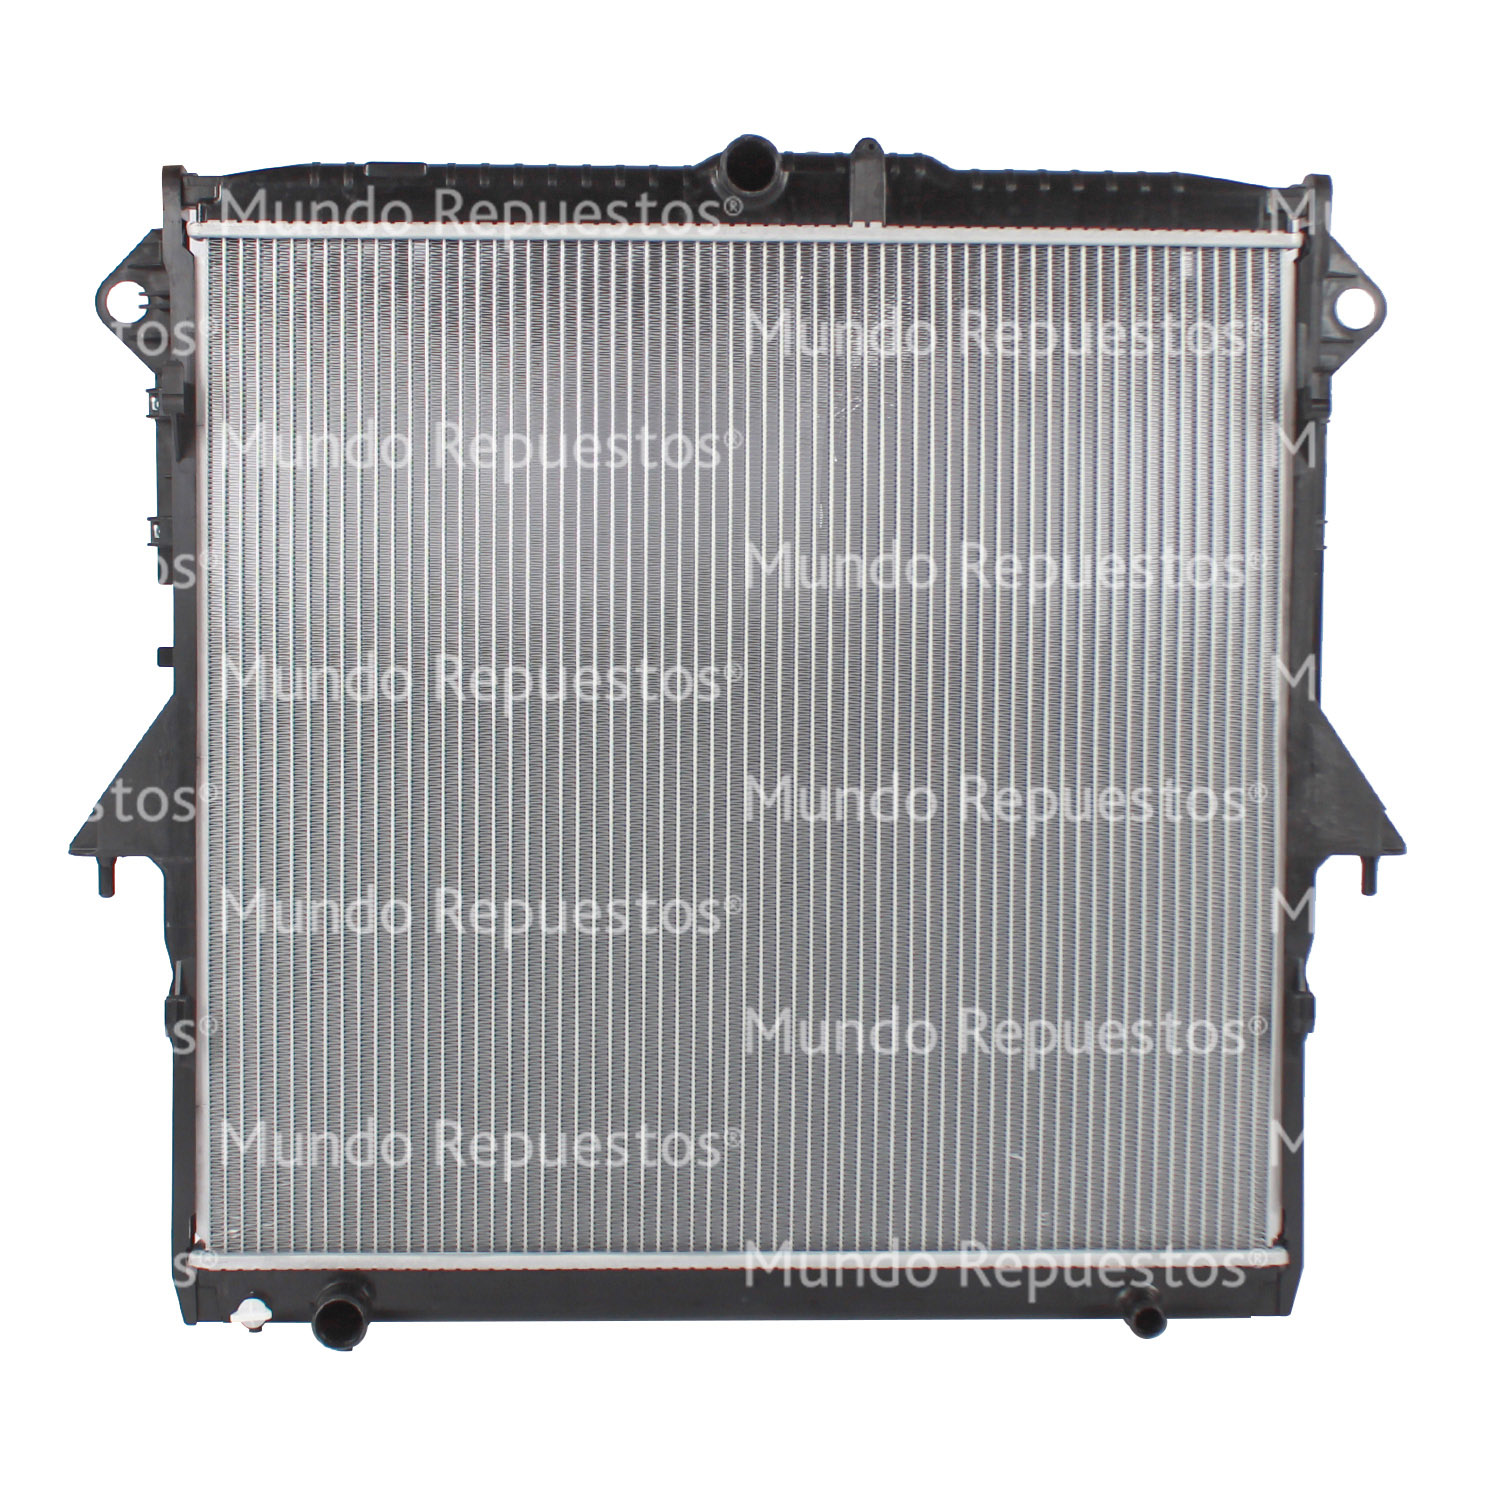 Radiador motor 605-645-26 00-00 CON Y SIN AIRE ACONDICIONADO AUTOMATICO MECANICO TIPO ORIGINAL marca Wurtex